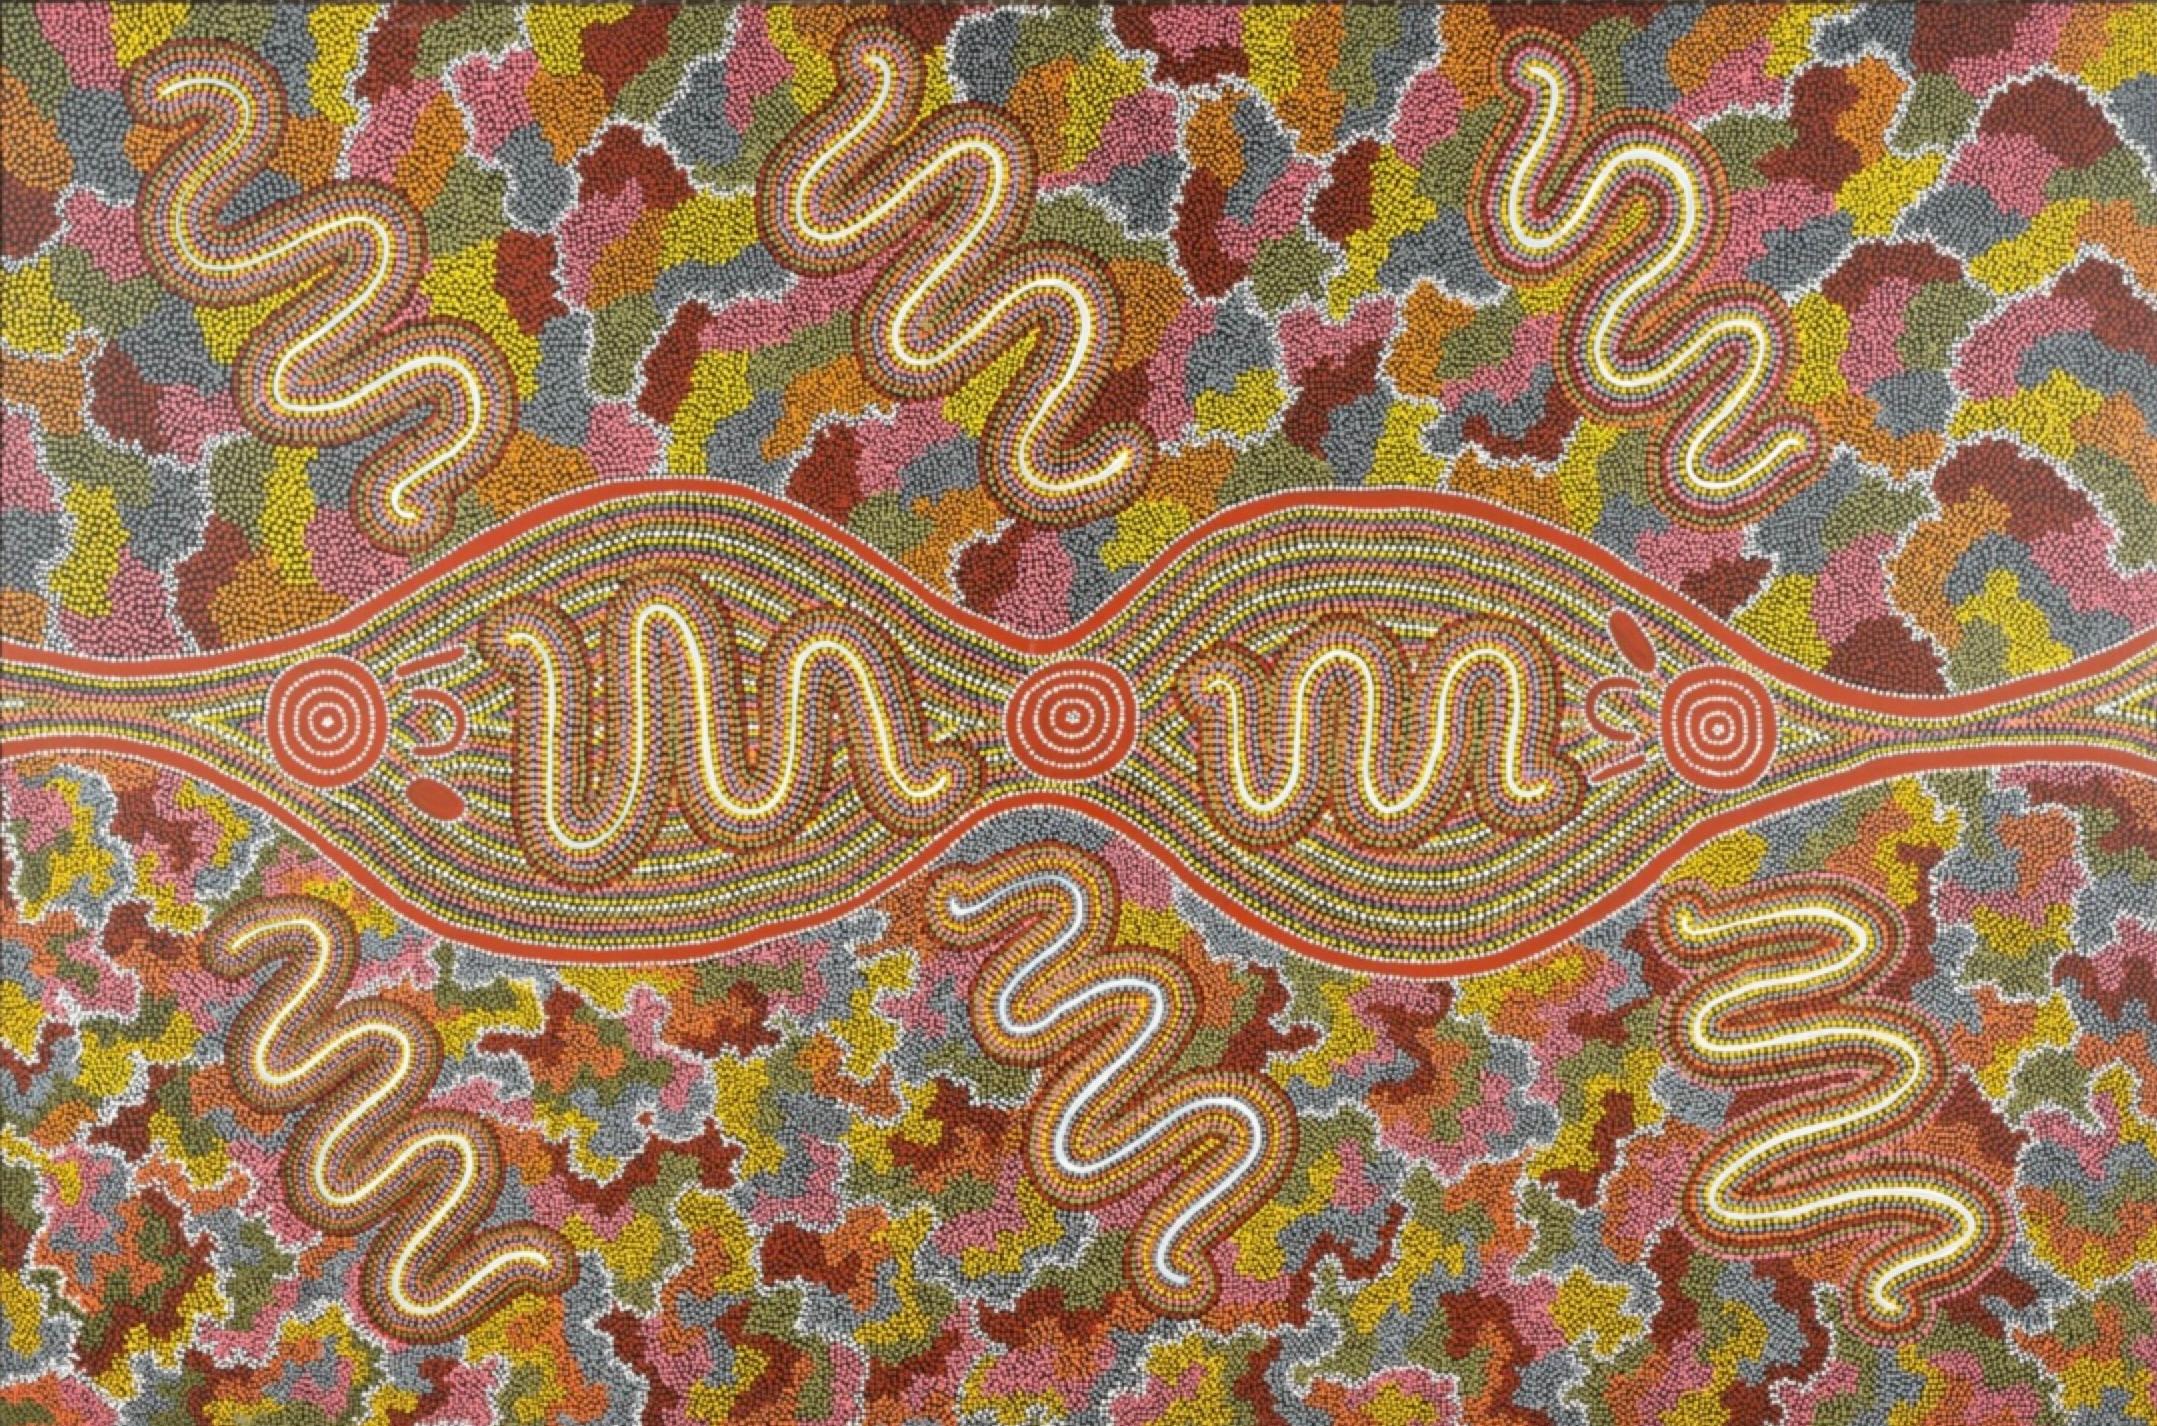 Sonda Turner Nampijinpa Abstract Painting – Worm Dreaming @ Mt. Wedge LARGE Aborigine Papunya australische weibliche Künstlerin 1988